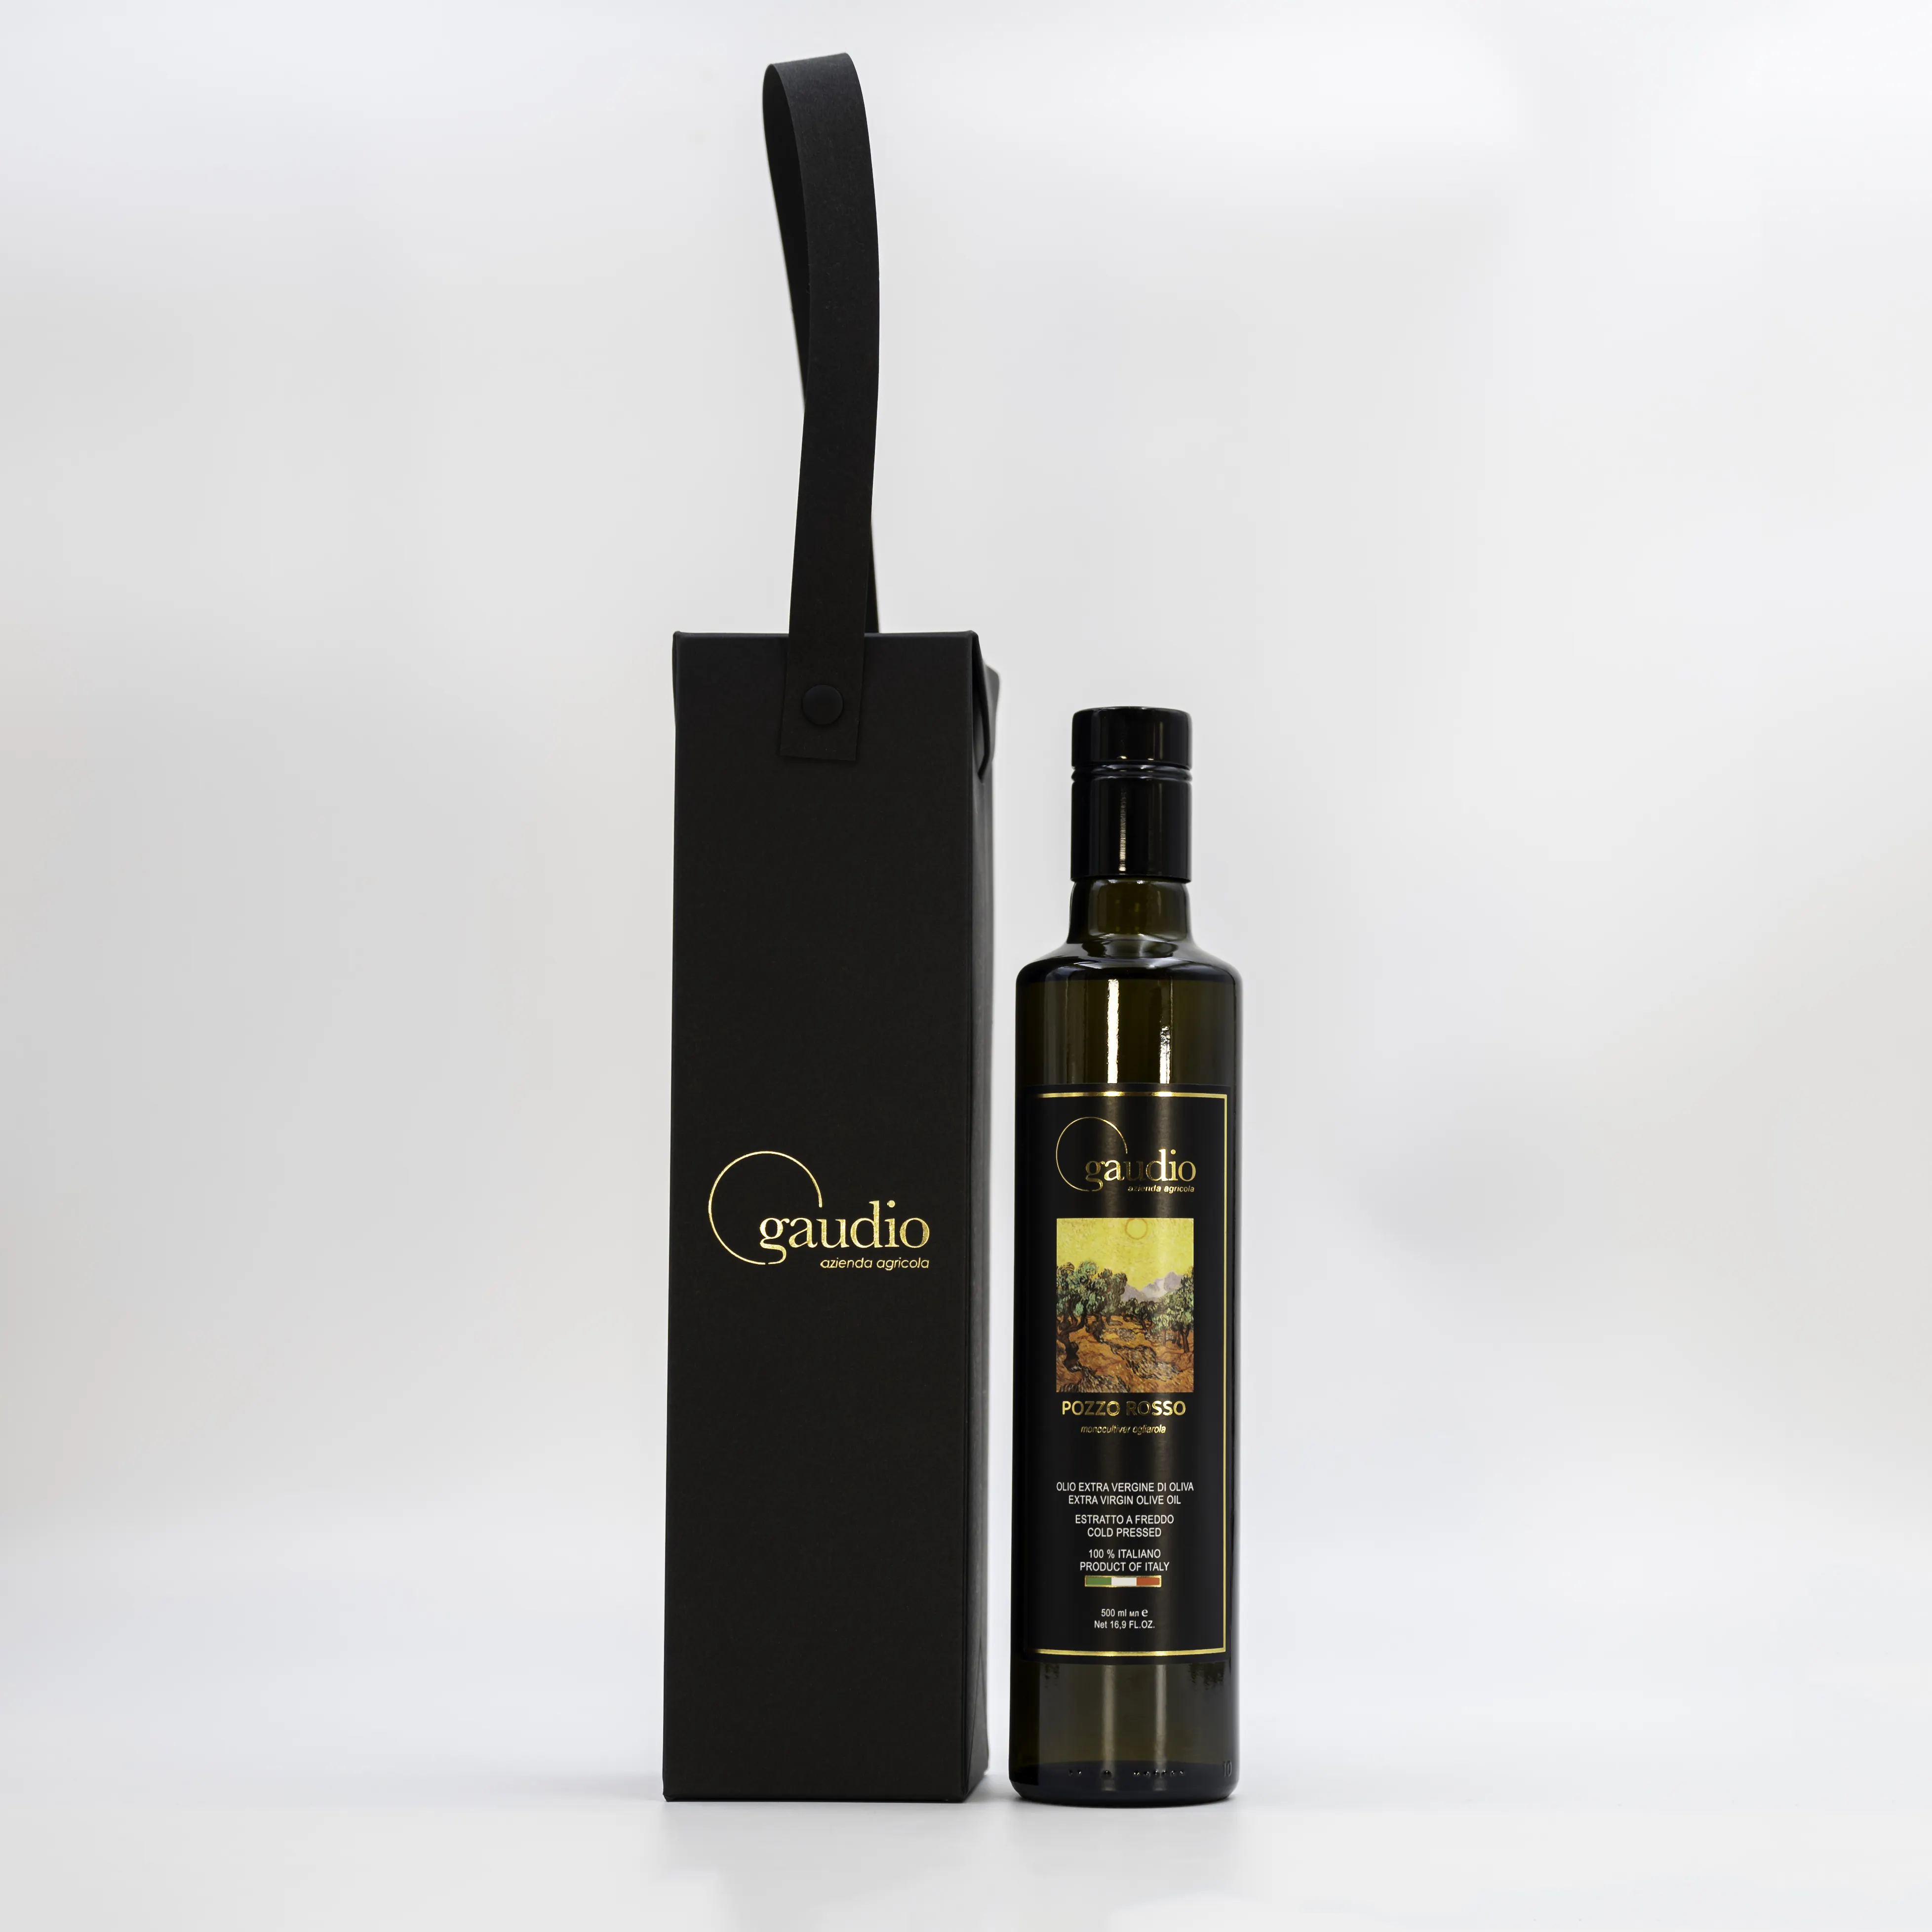 Hecho en Italia EVOO exprimidor de prensado en frío sabor delicado aceite de oliva virgen extra botella de vidrio de 500ml para cocinar y condimentar